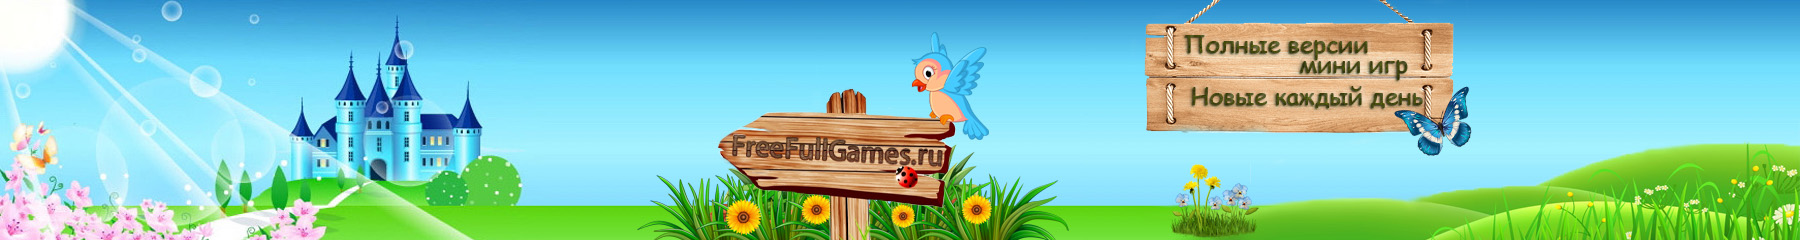 FreeFullGames.ru -полные версии игр скачать бесплатно и без регистрации, мини игры на слабый пк